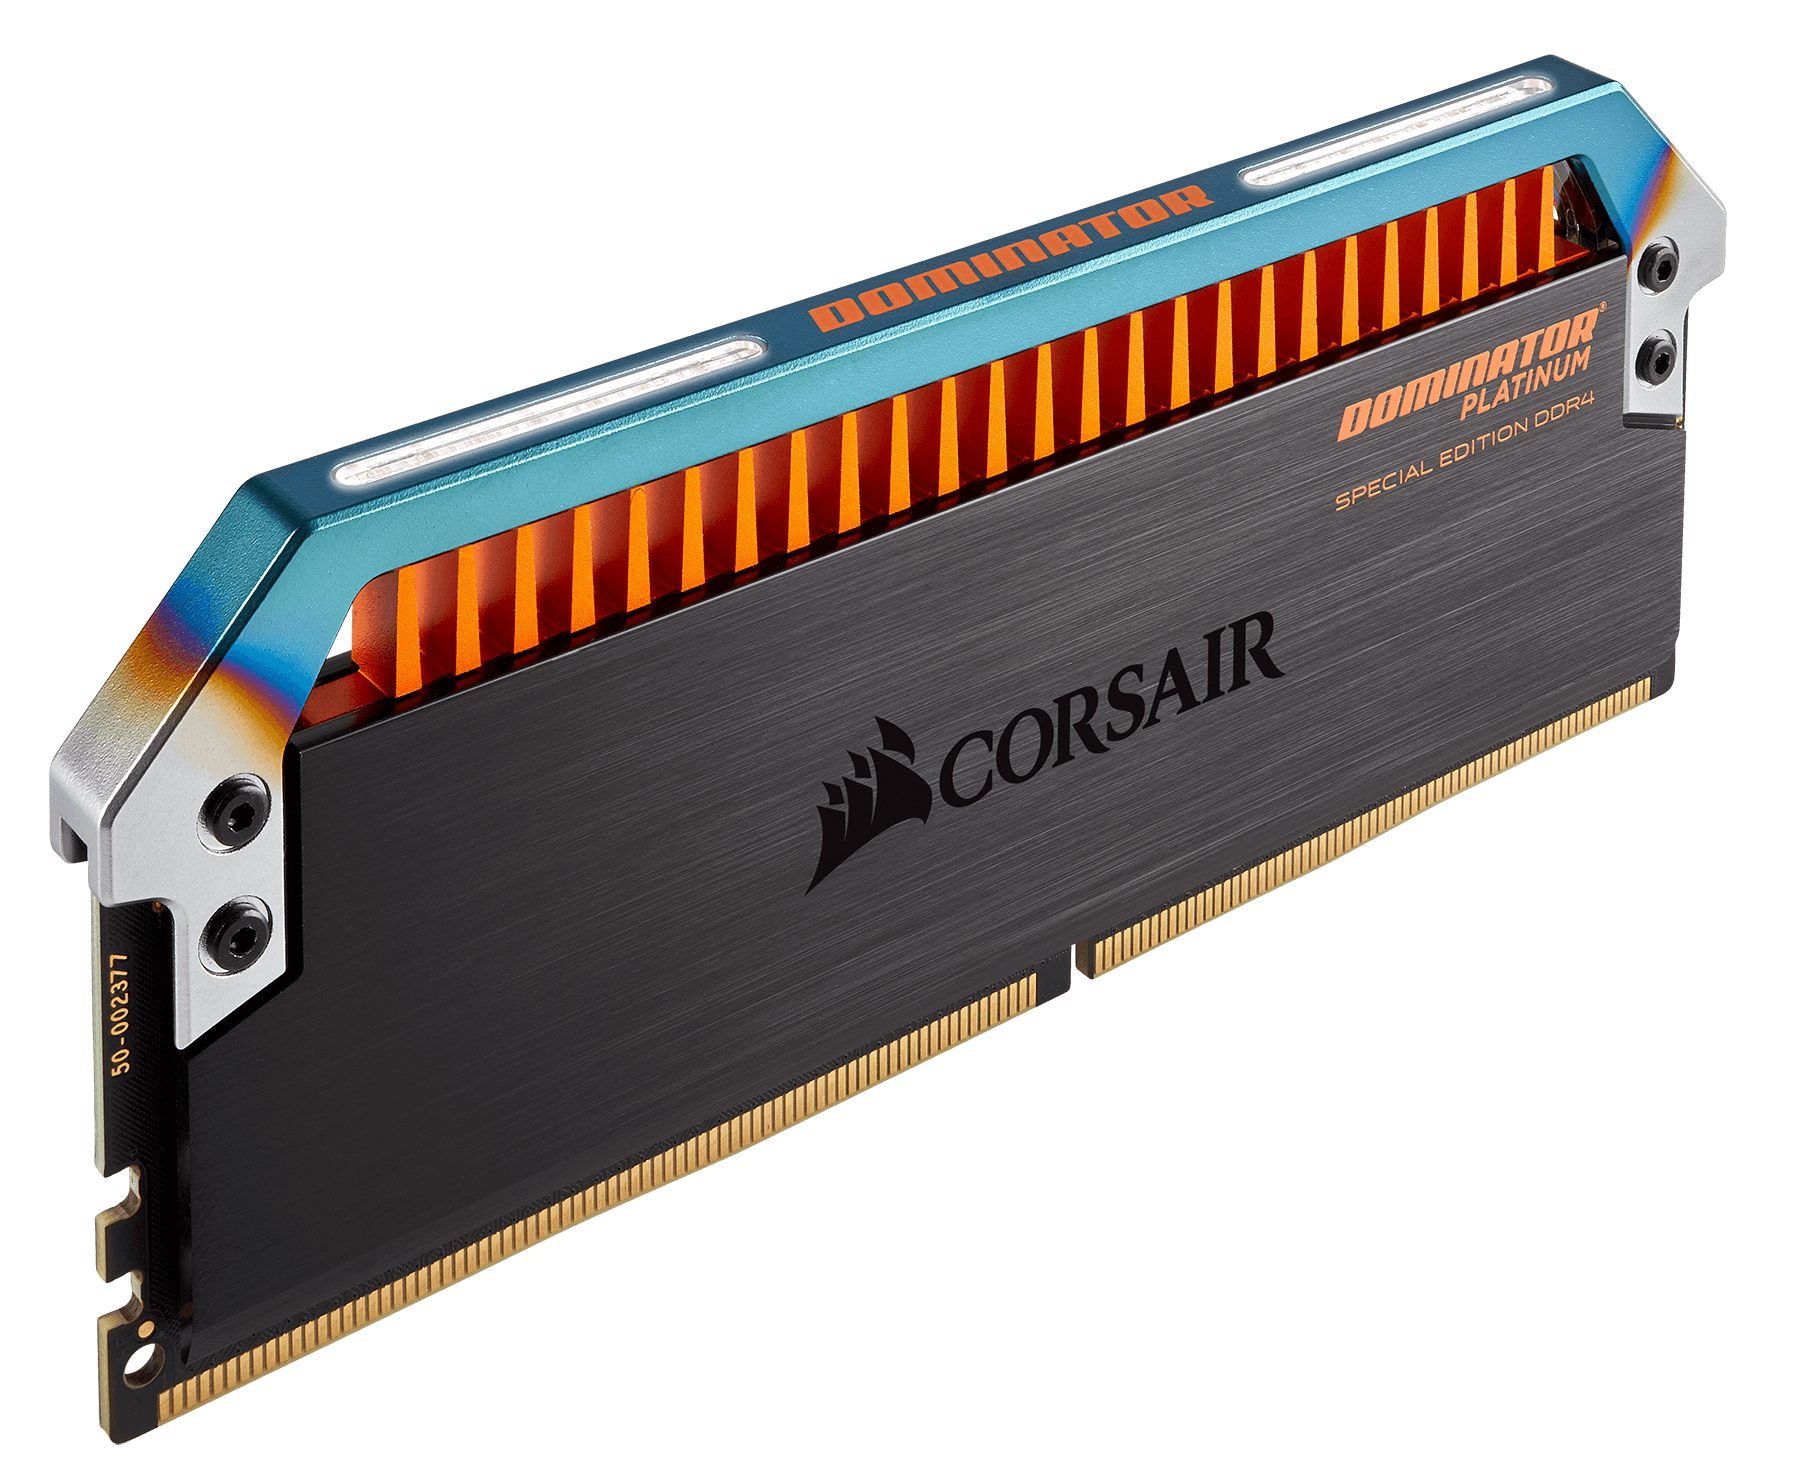 Immagine pubblicata in relazione al seguente contenuto: Corsair commercializza le DDR4 DOMINATOR PLATINUM Special Edition Torque | Nome immagine: news26330_Corsair-DOMINATOR-PLATINUM-Special-Edition-Torque_1.png